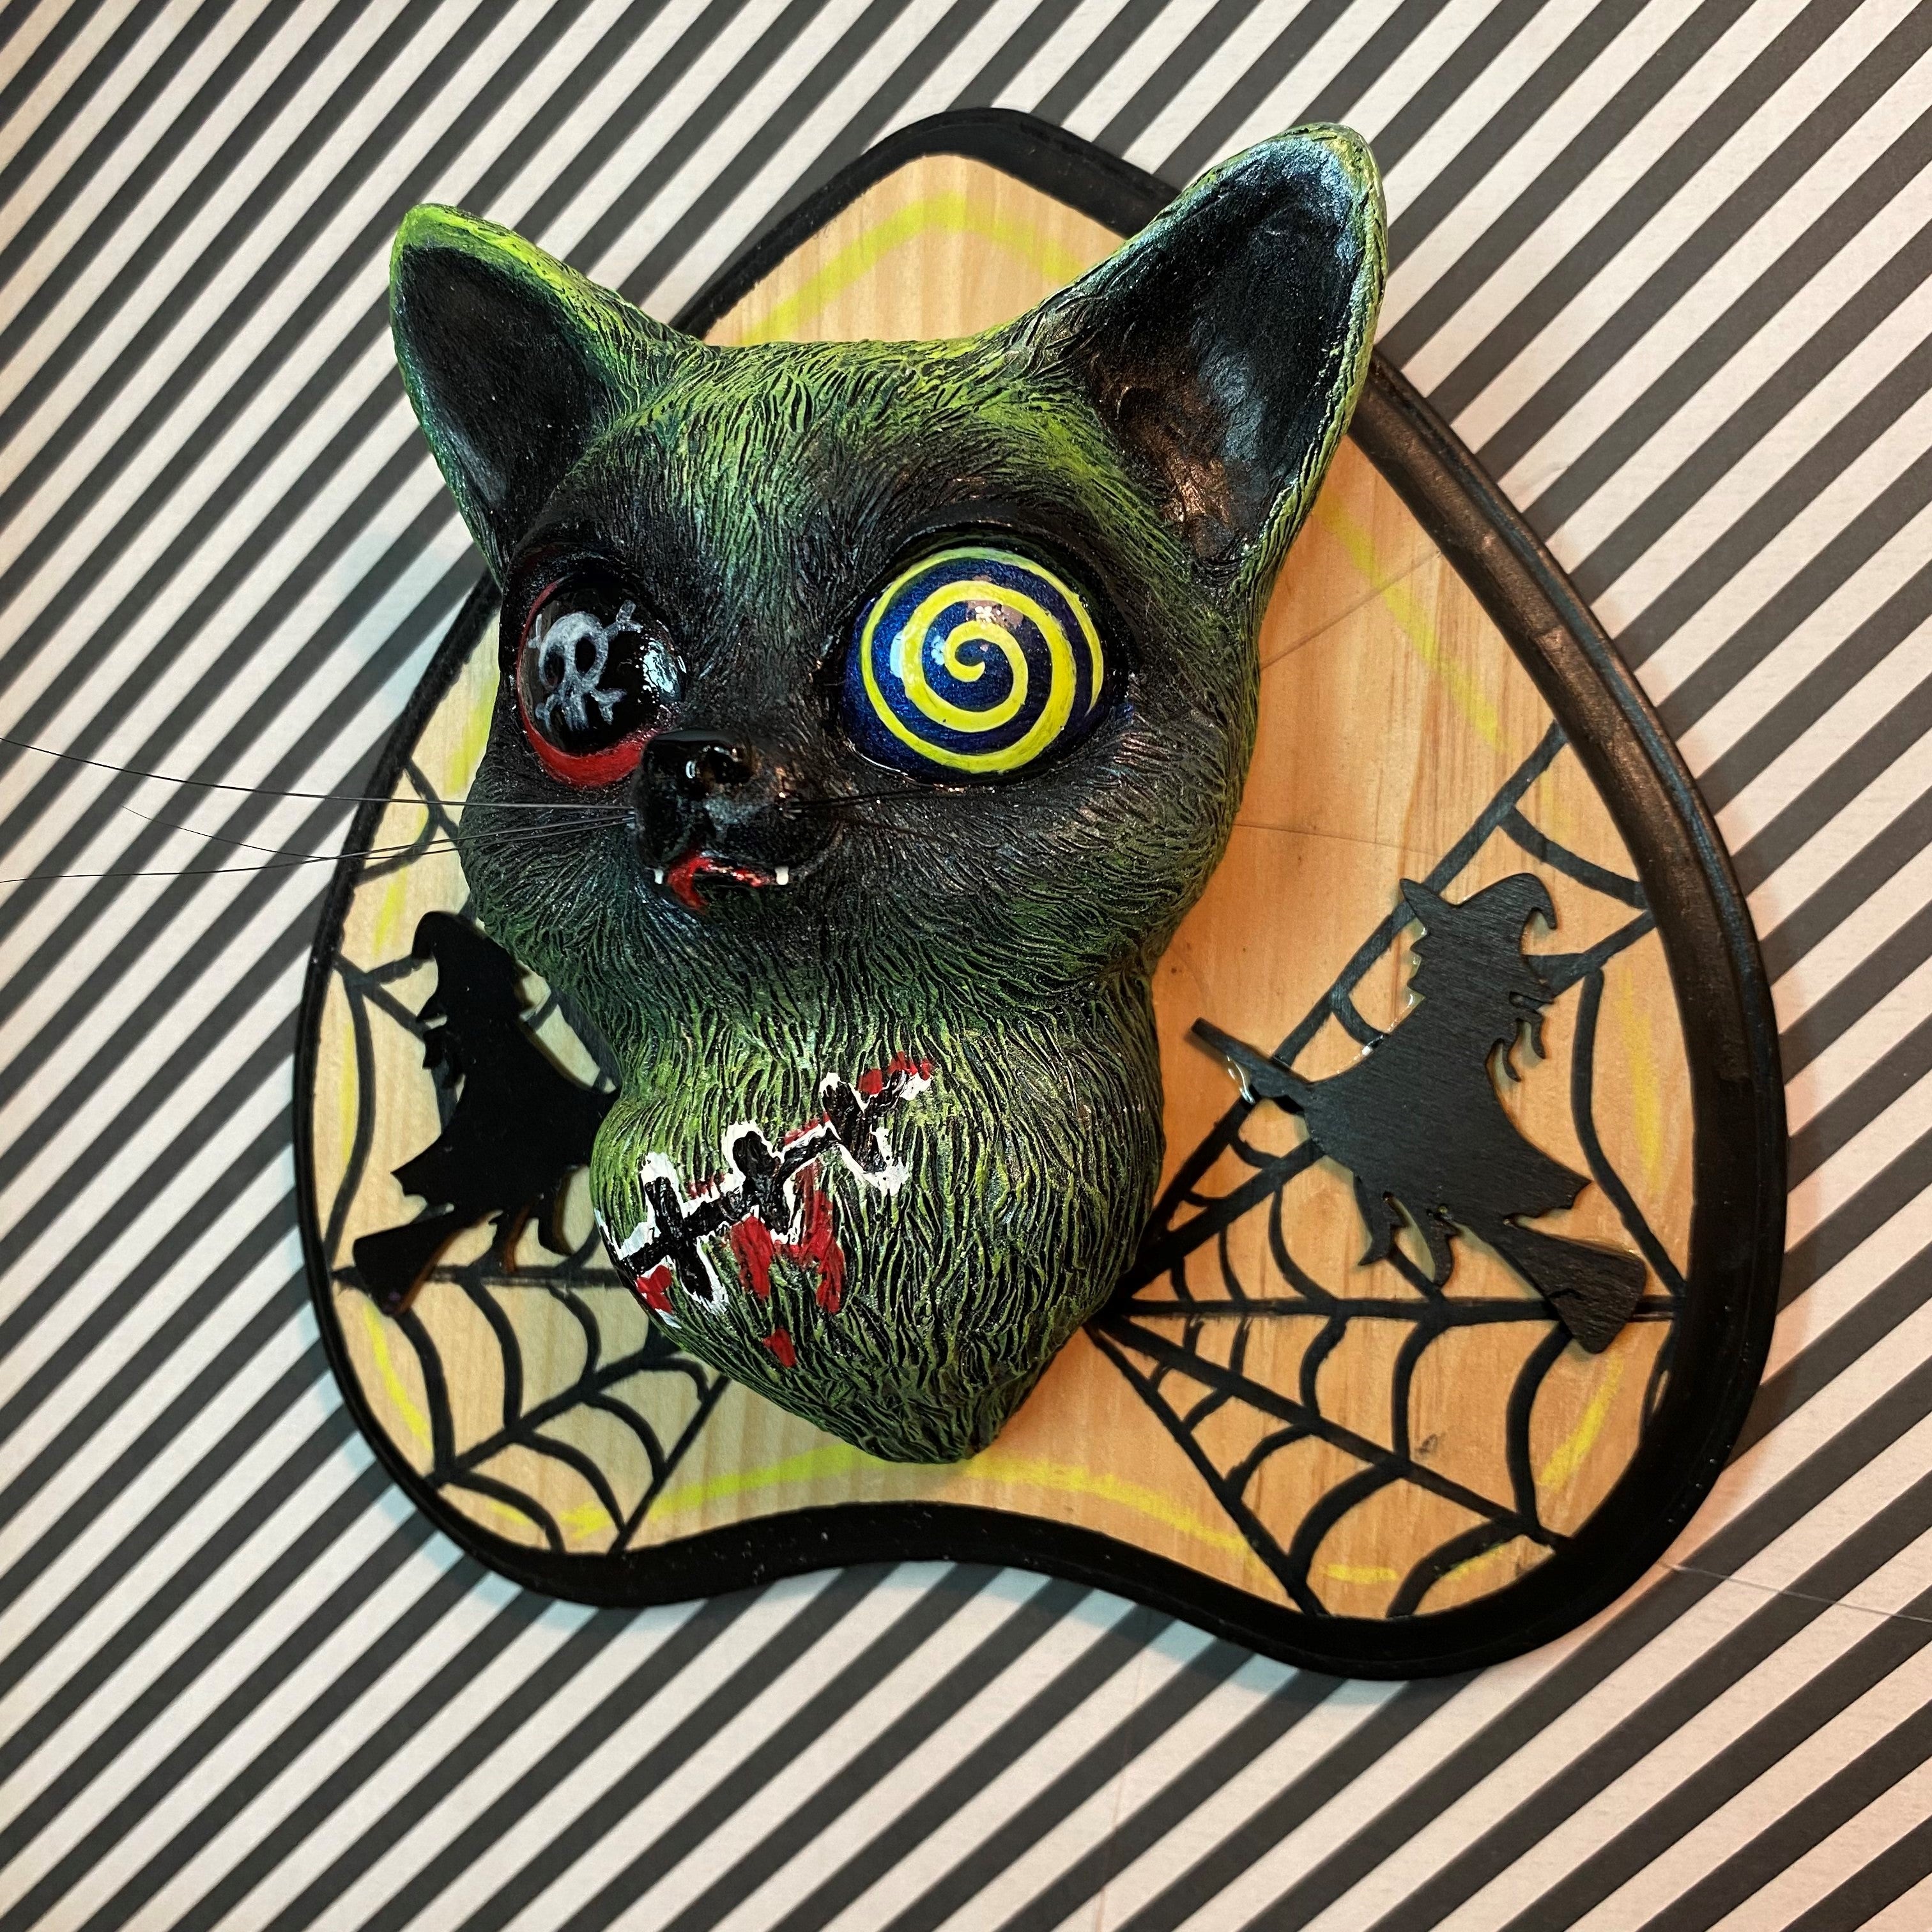 Strangecat's Halloween Show - Zombie Kitty by Stitch of Whimsy